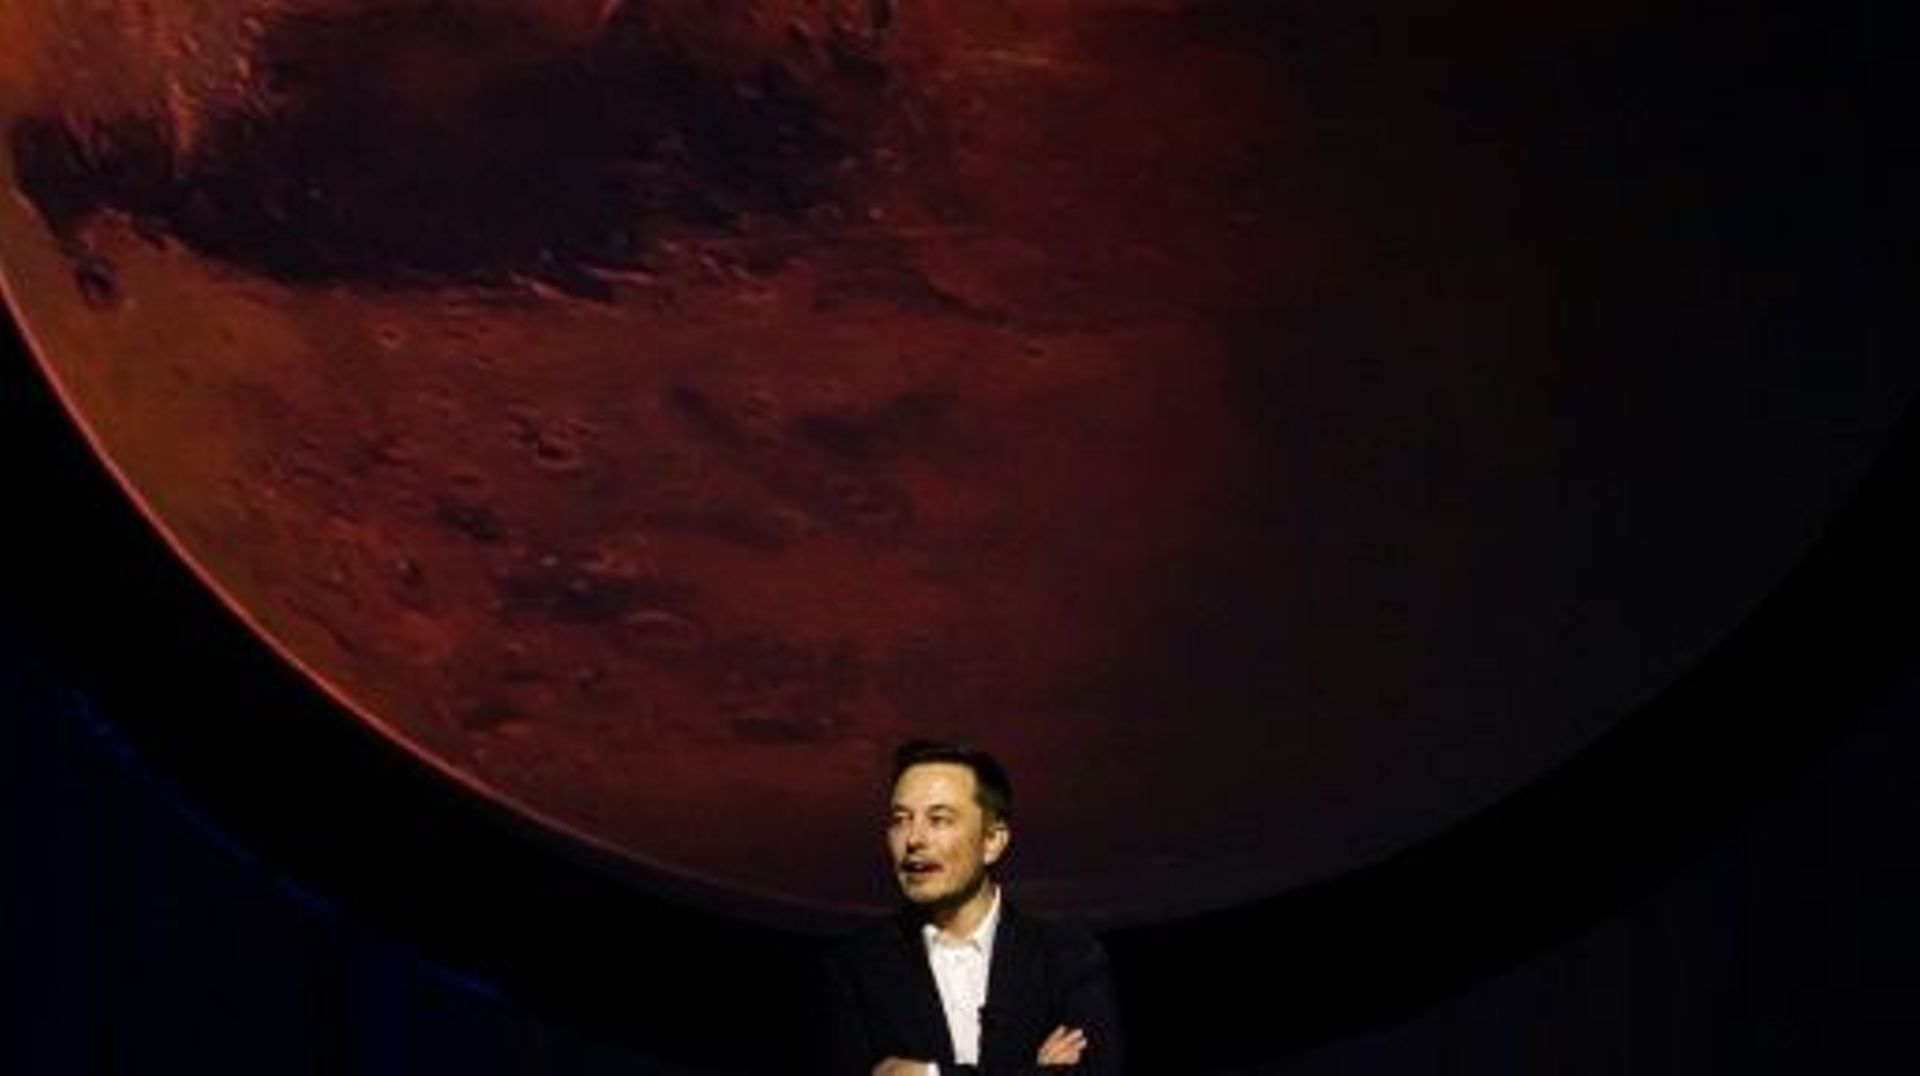 Elon Musk présente le 27 septembre 2016 son plan pour envoyer des humains sur Mars, lors d'un congrès international à Guadalajara, au Mexique